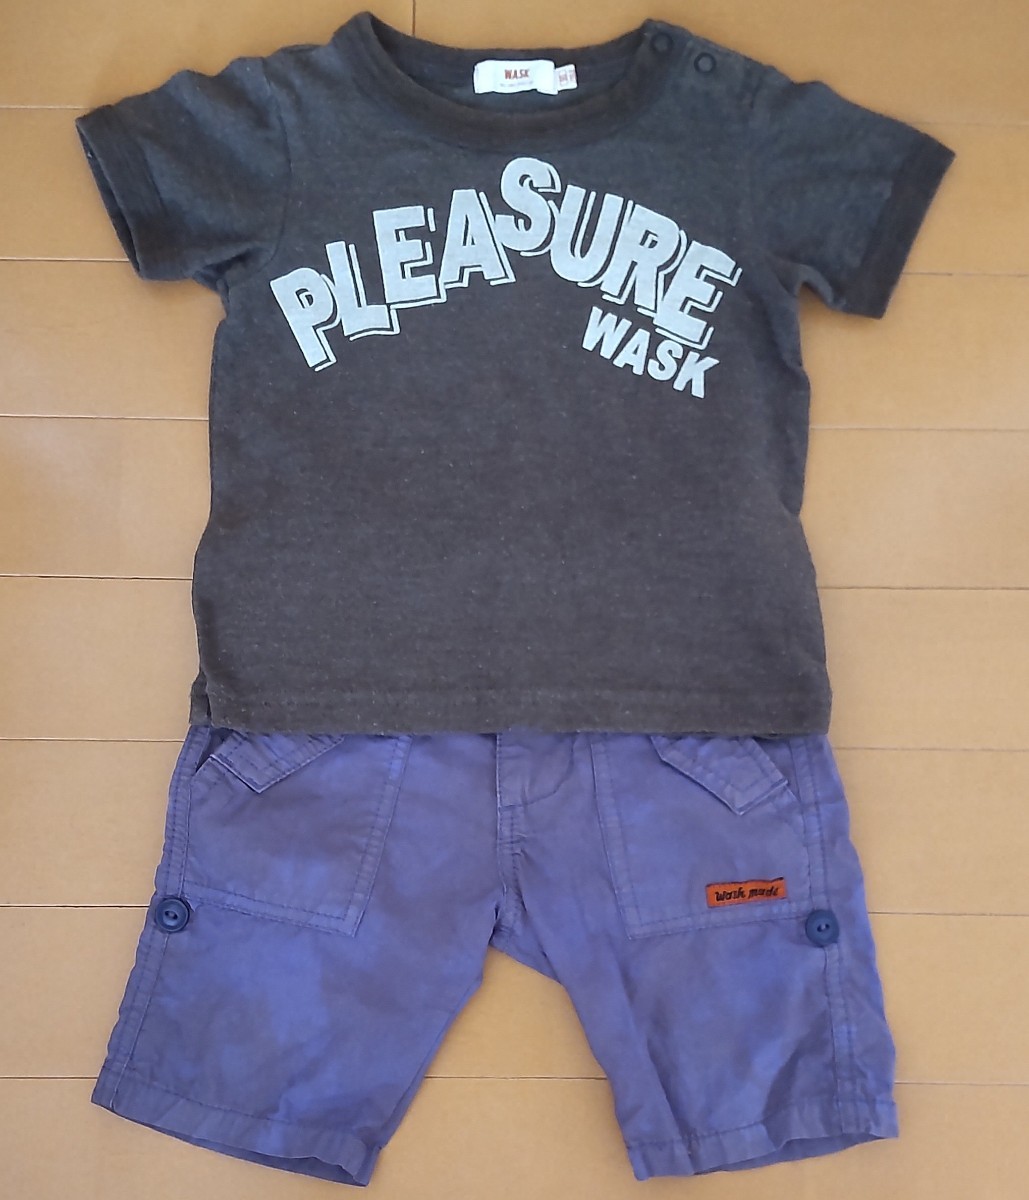 送料無料！WASK(ワスク)半袖Tシャツとハーフパンツの上下セット/ ショートパンツ /ベビー・キッズ・子供用/男の子/80サイズ・90サイズ